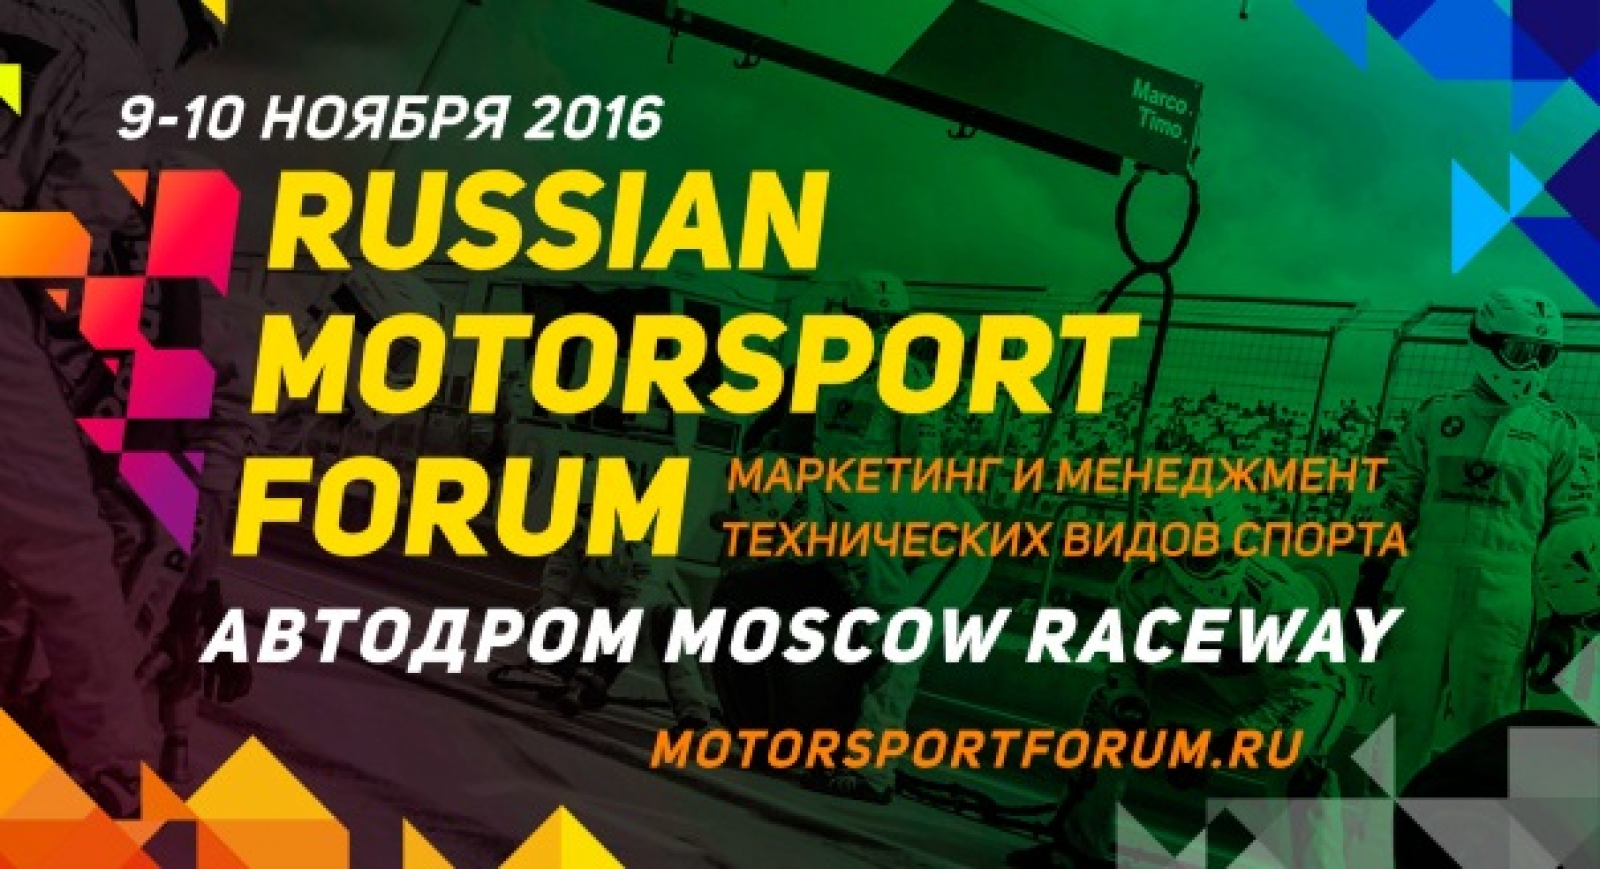 Russian Motorsport Forum: уже скоро!